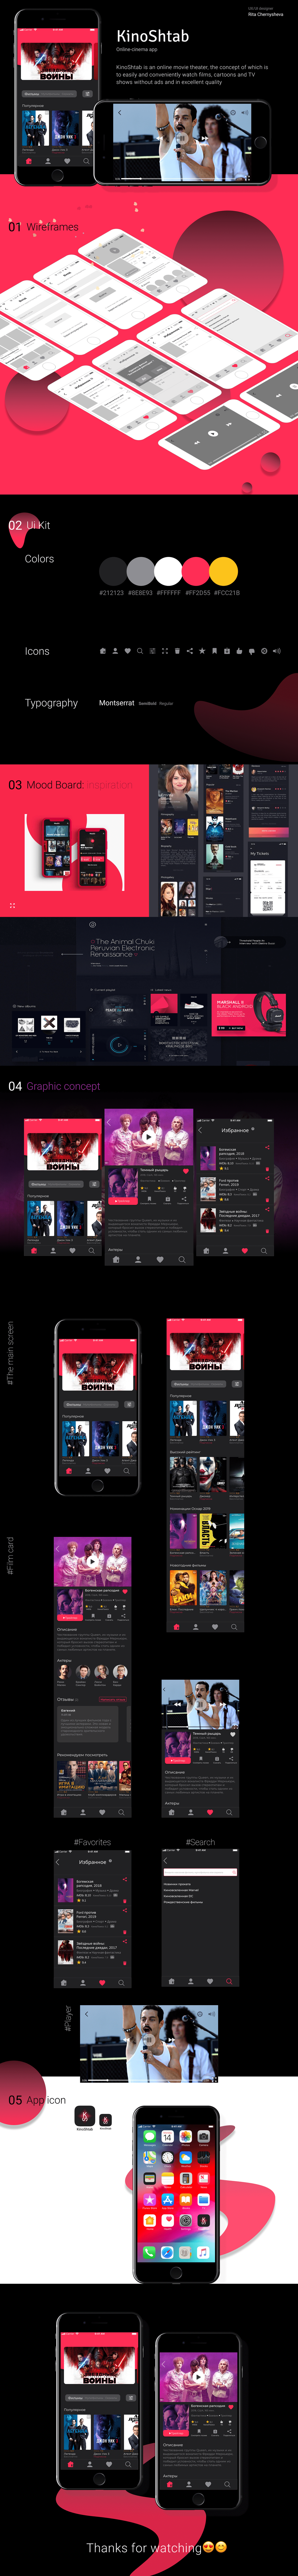 Cinema app movie ux/ui UI/UX ios design dark Interface mobile